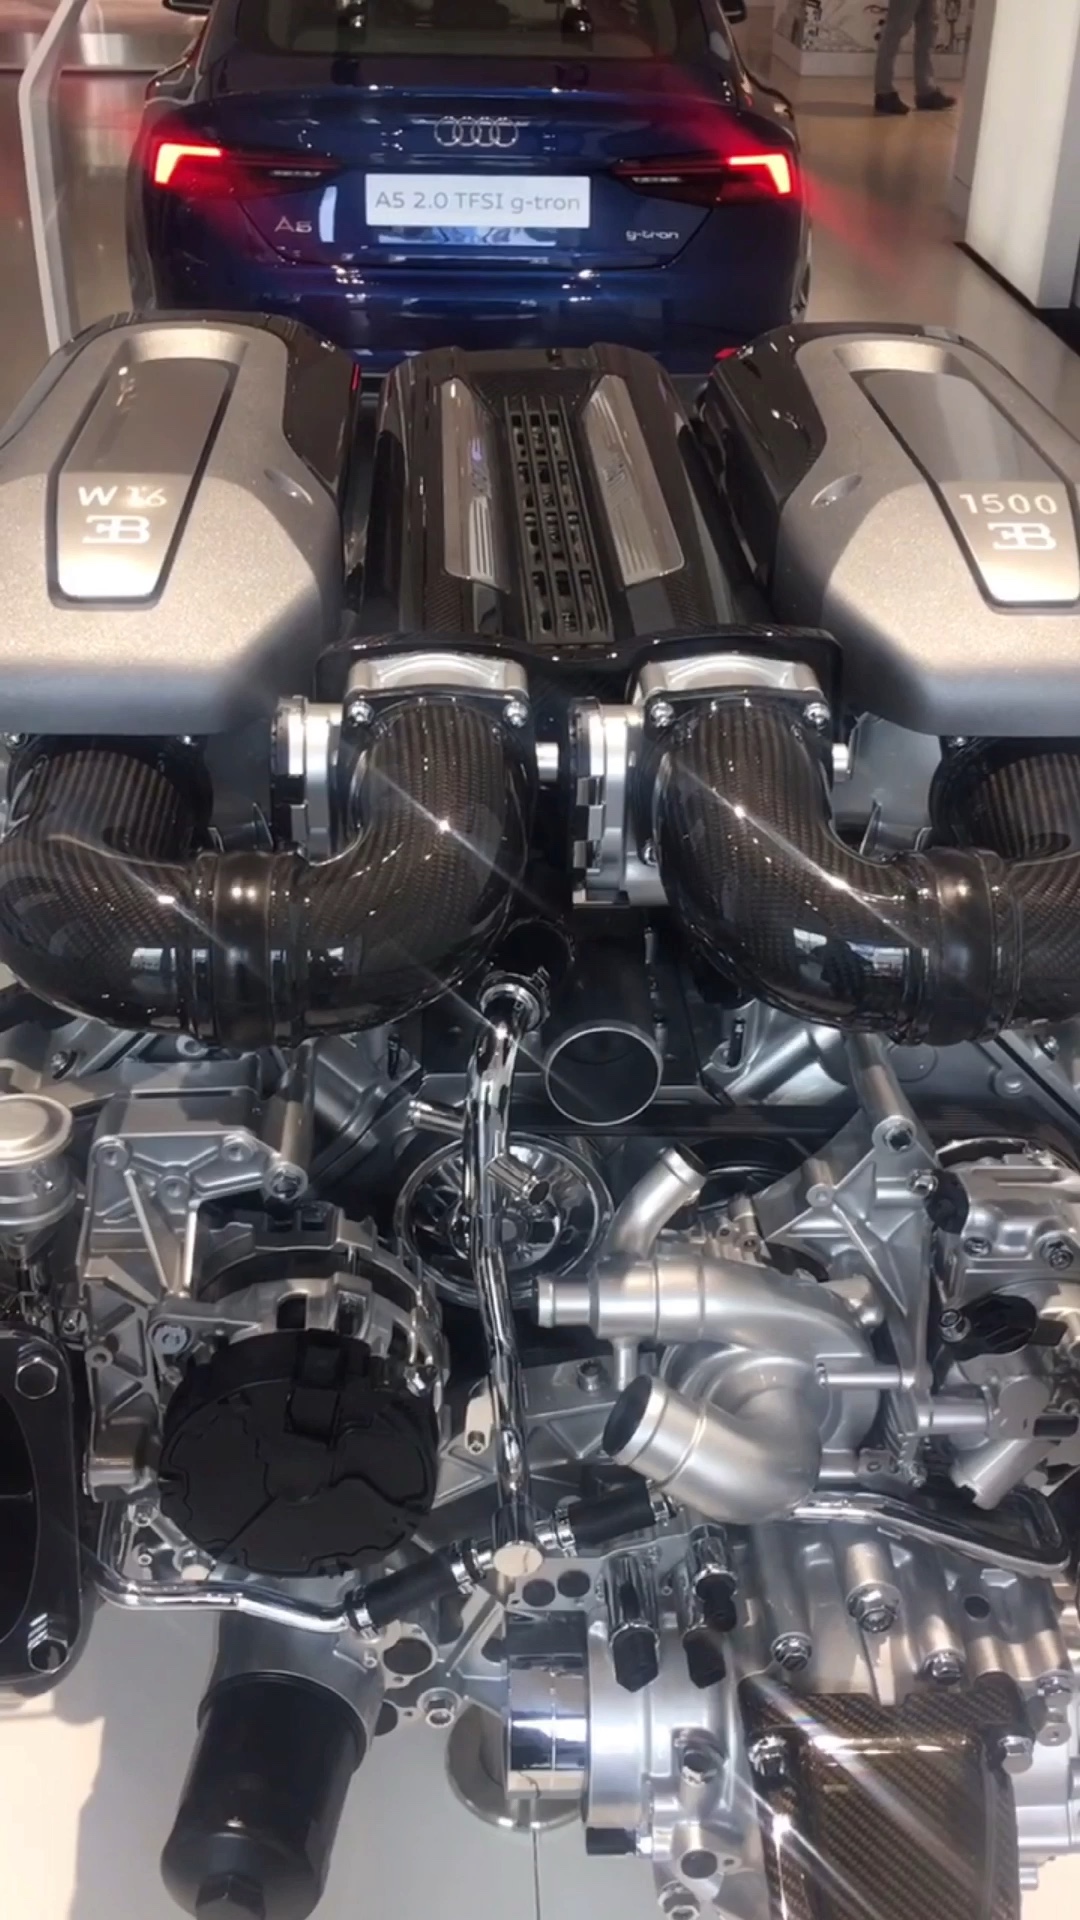 布加迪 w16引擎,真是艺术品! 